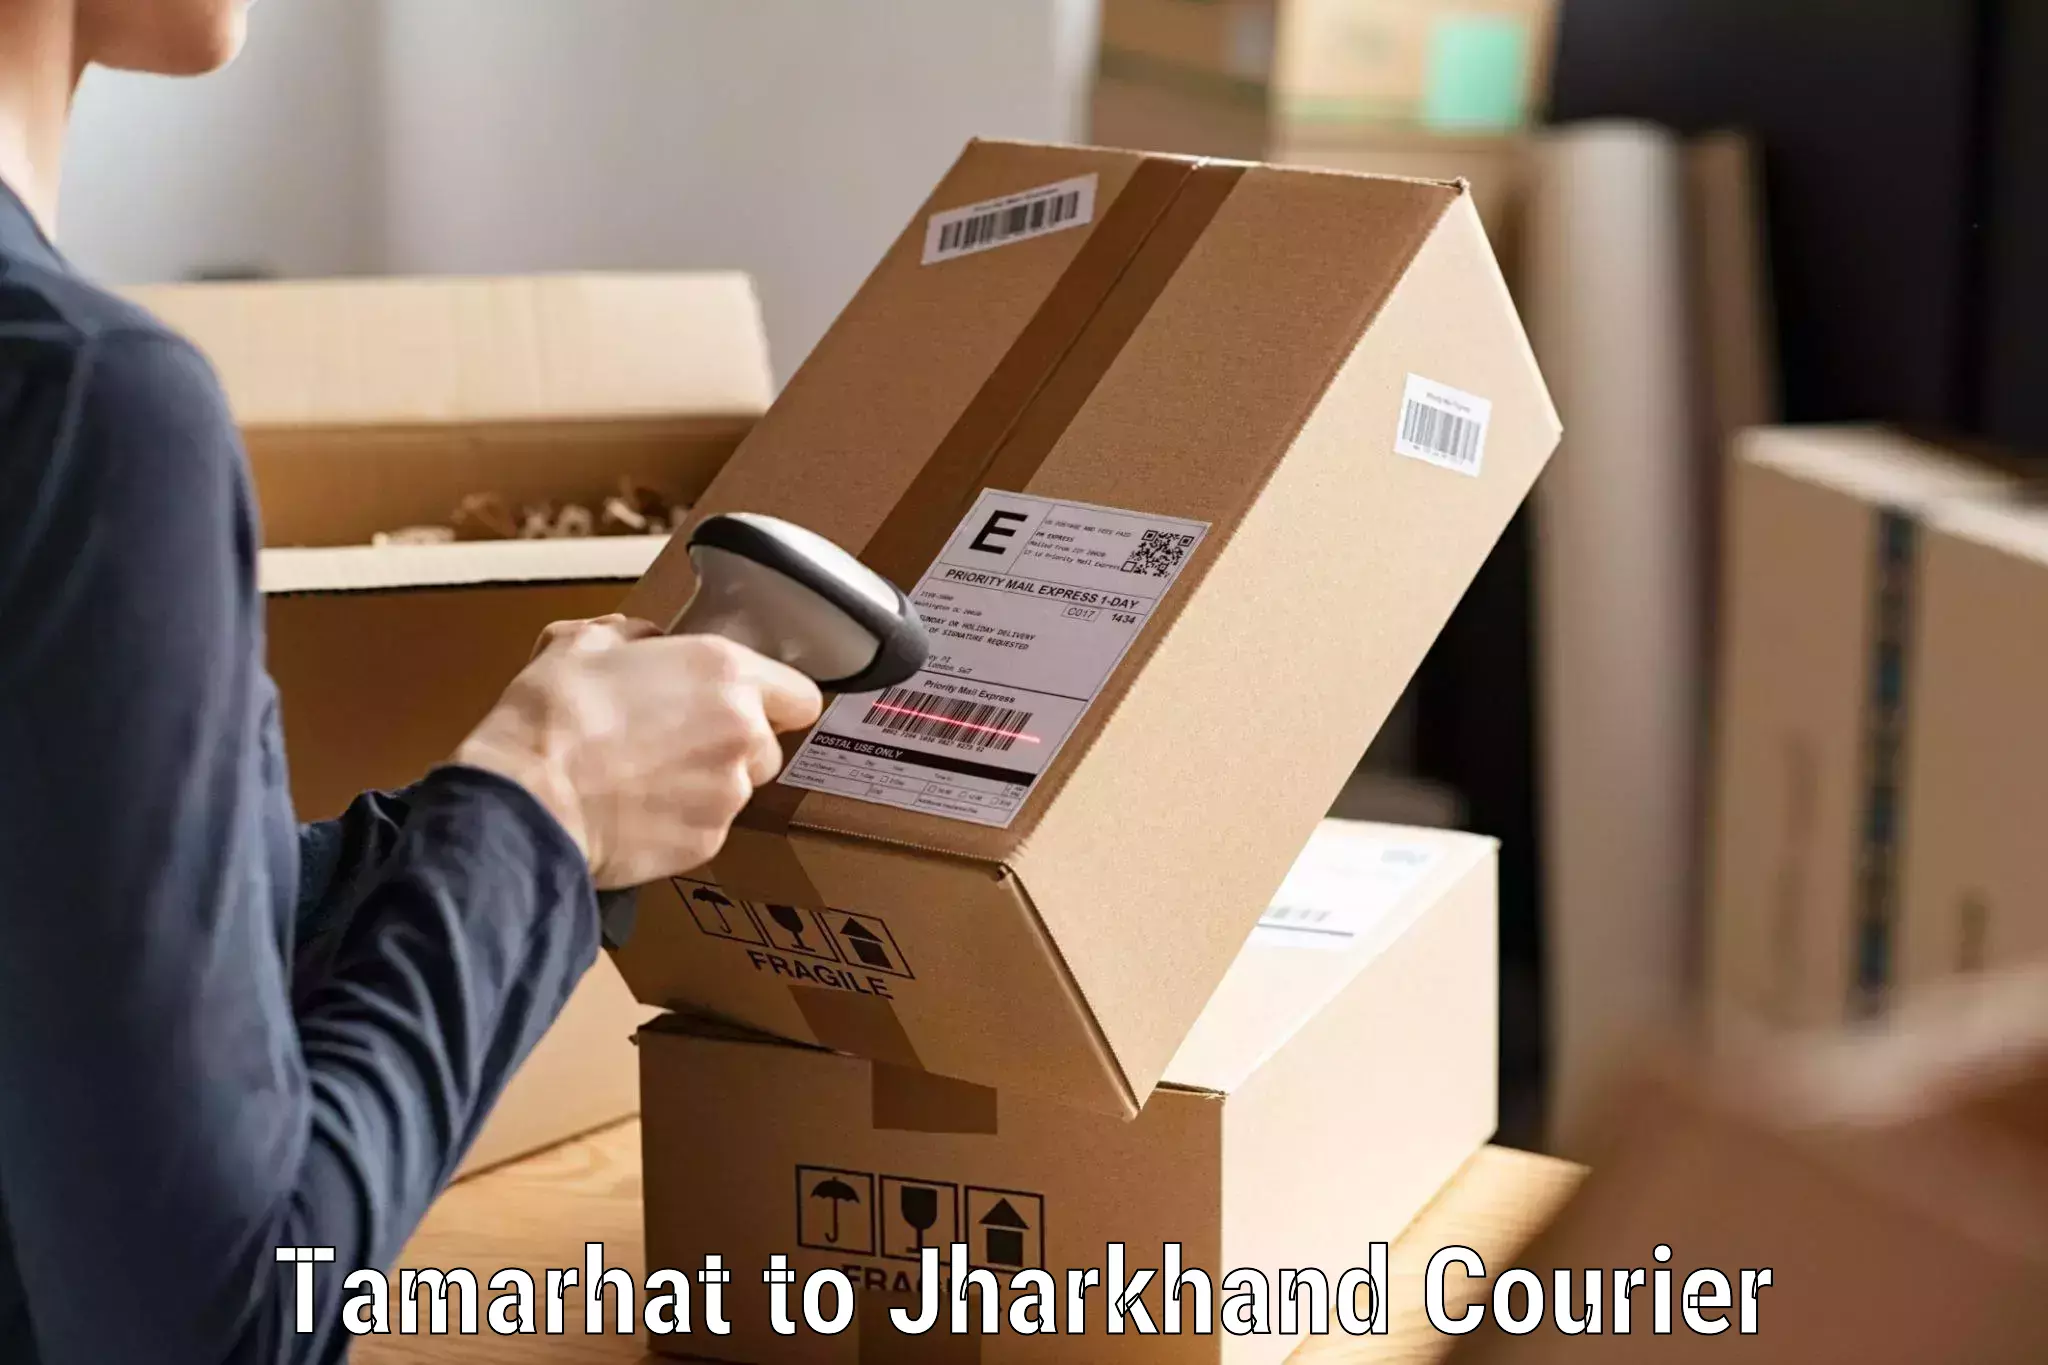 Secure shipping methods Tamarhat to Jamshedpur